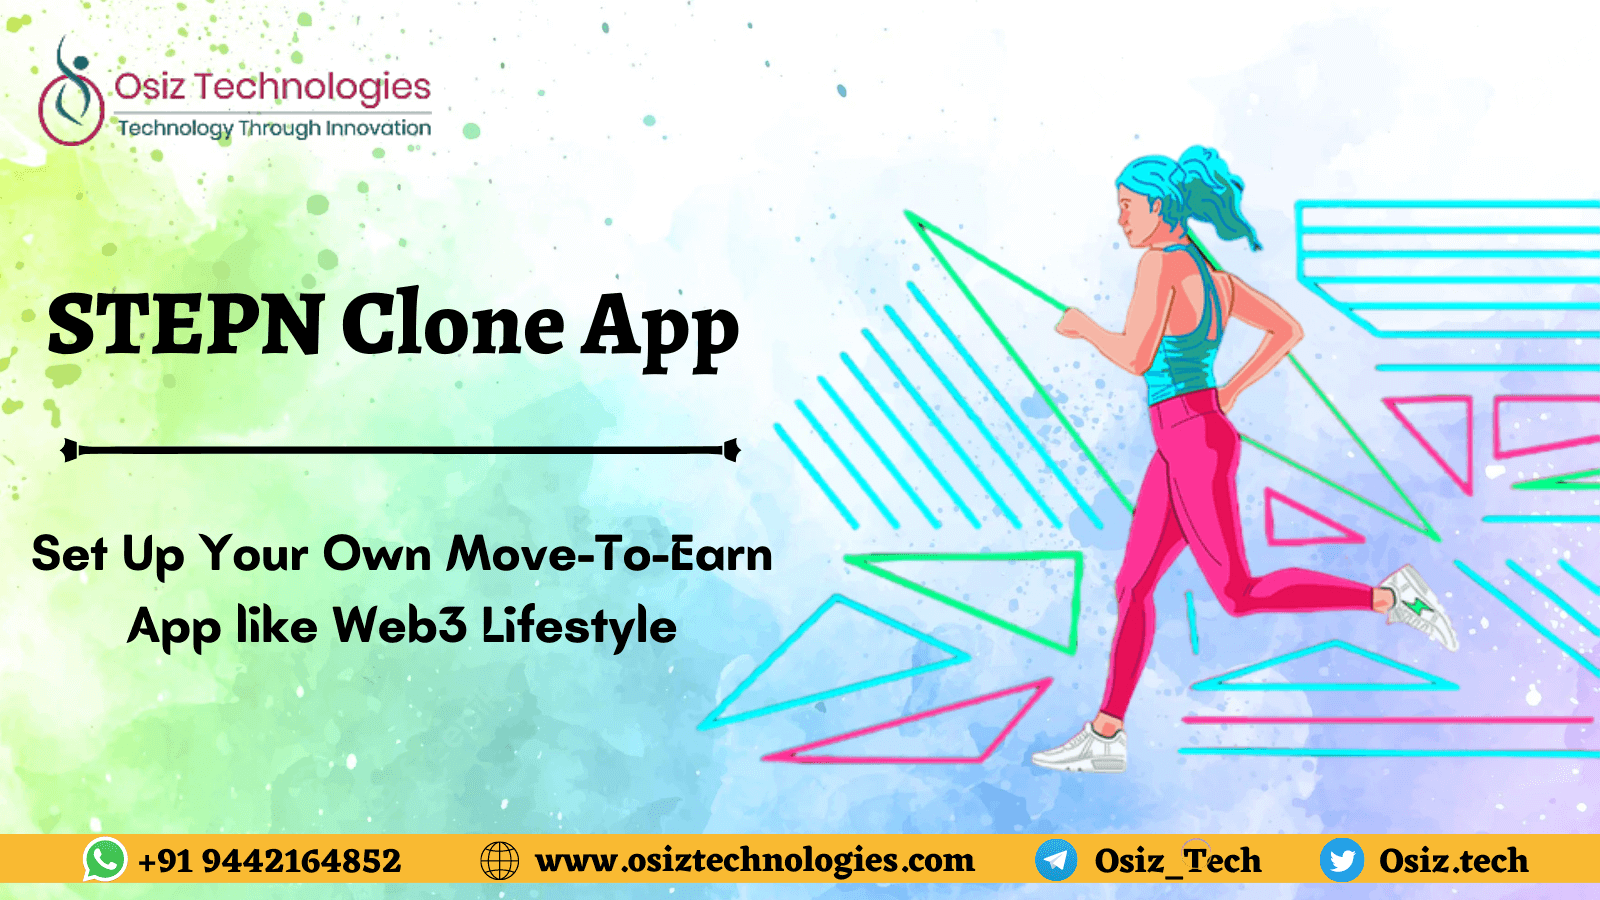 STEPN Clone App